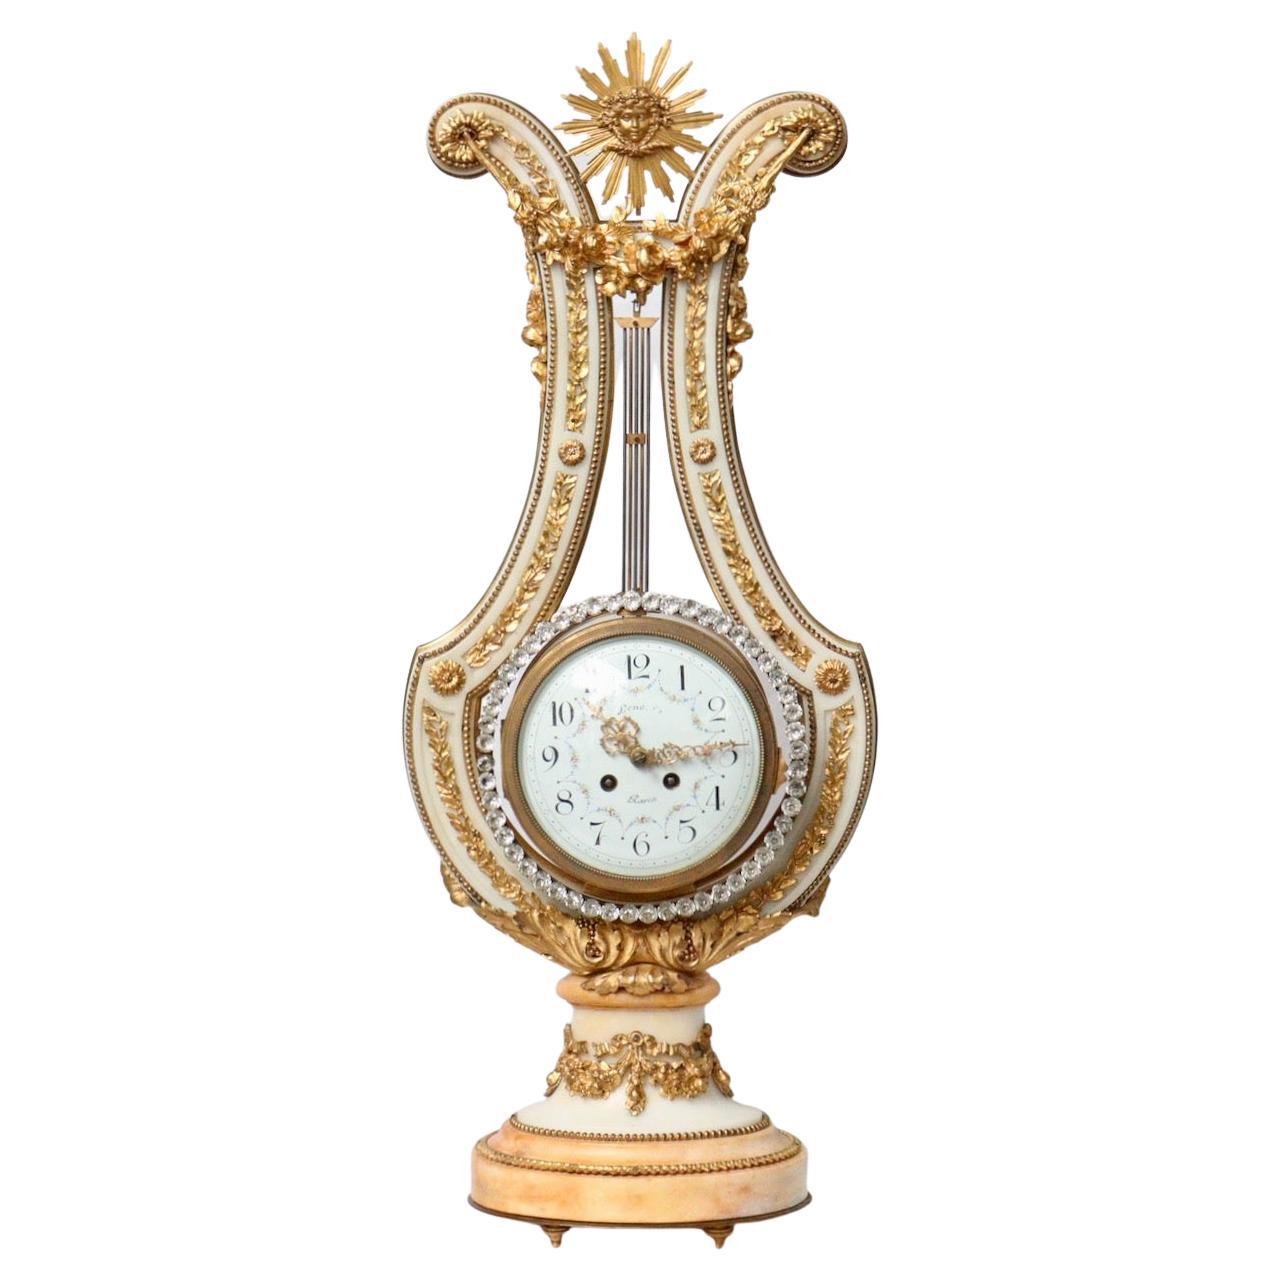 Eine beeindruckende französische Leier-Uhr des 19. Jahrhunderts mit juwelenbesetztem Pendel.

Erstaunliche Qualität weißer und gelber Marmor 19. Jahrhundert Französisch Lyre-Form Uhr montiert alle über mit vergoldeter Bronze Blätter und Swags,